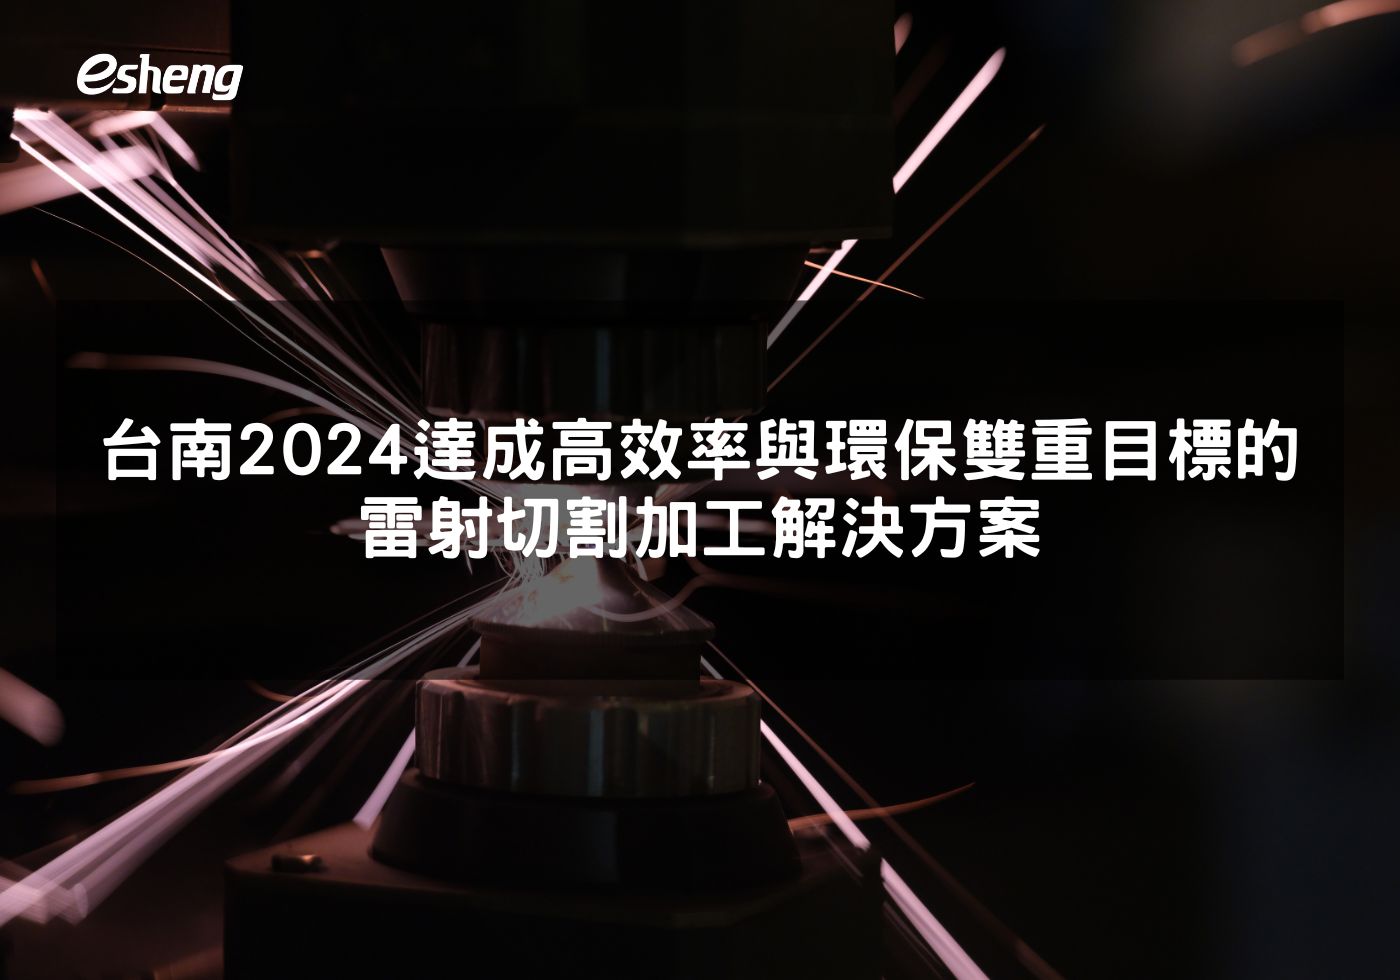 台南2024達成高效率與環保雙重目標的雷射切割加工解決方案